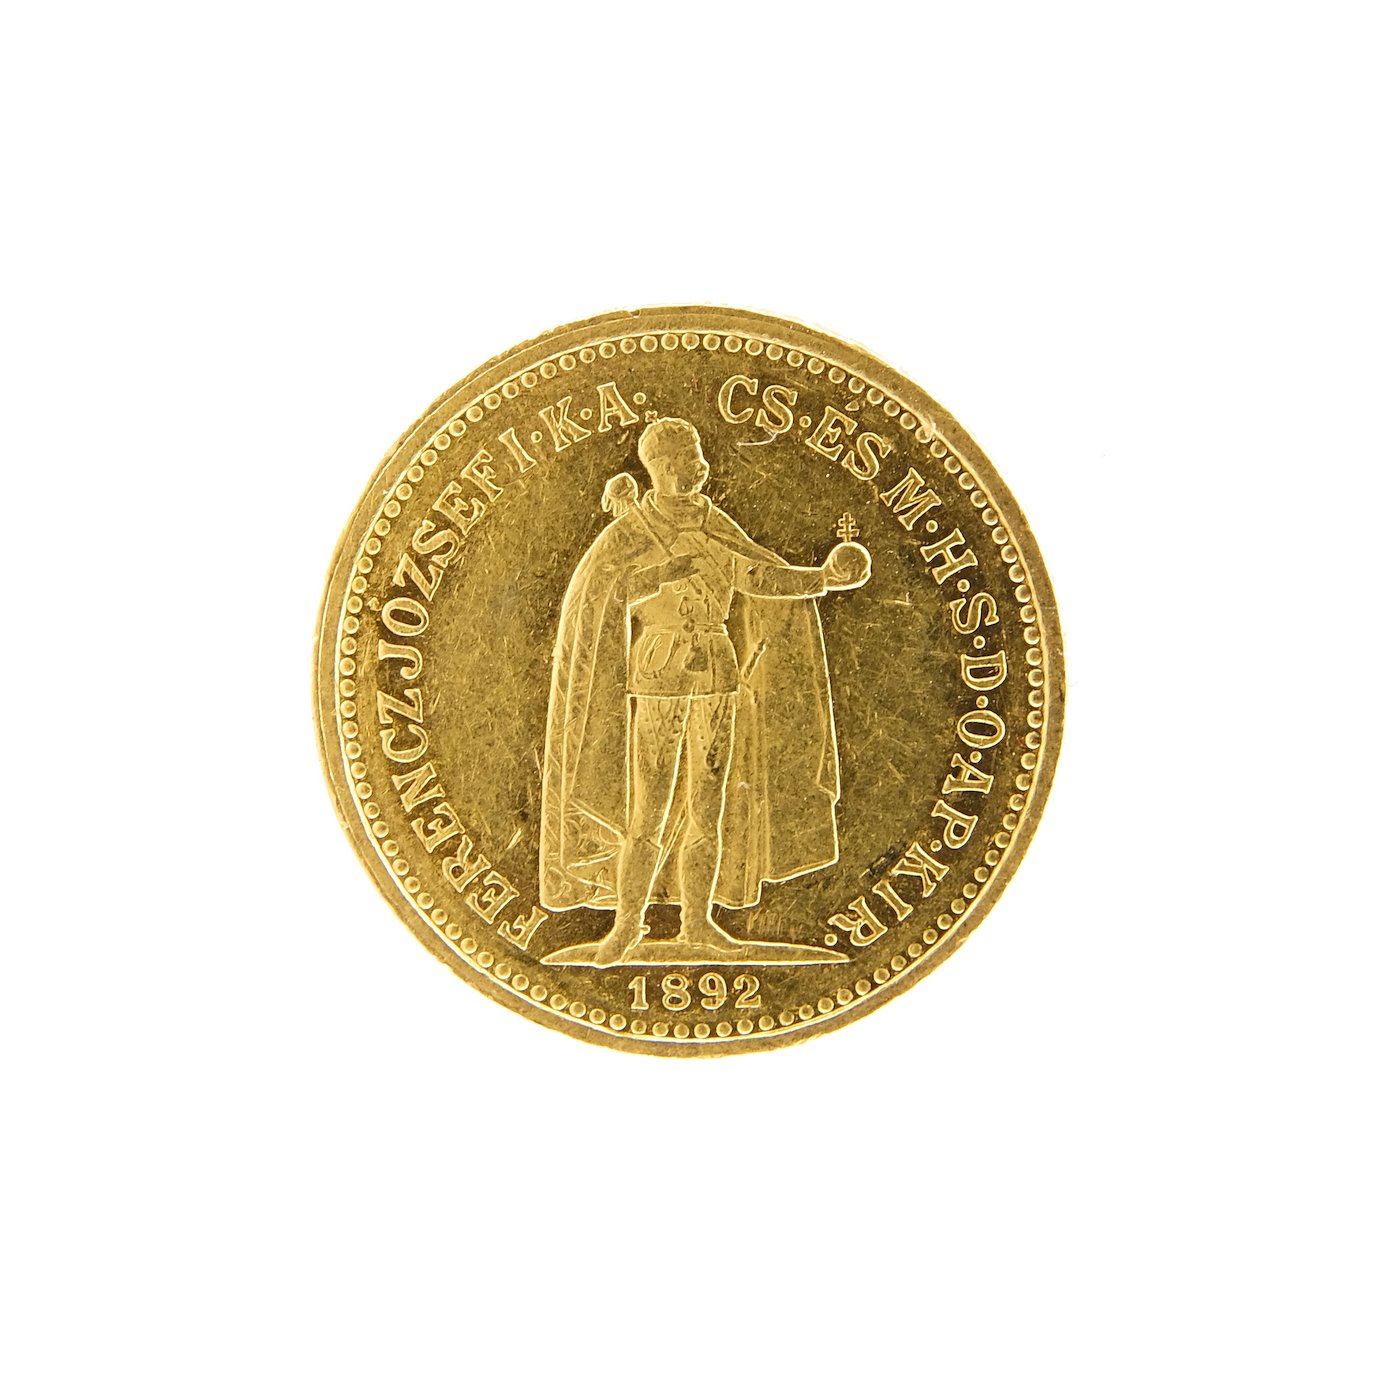 Mince - Rakousko Uhersko zlatá 10 Koruna 1892 K.B. uherská. Zlato 900/1000, hrubá hmotnost mince 3,387g